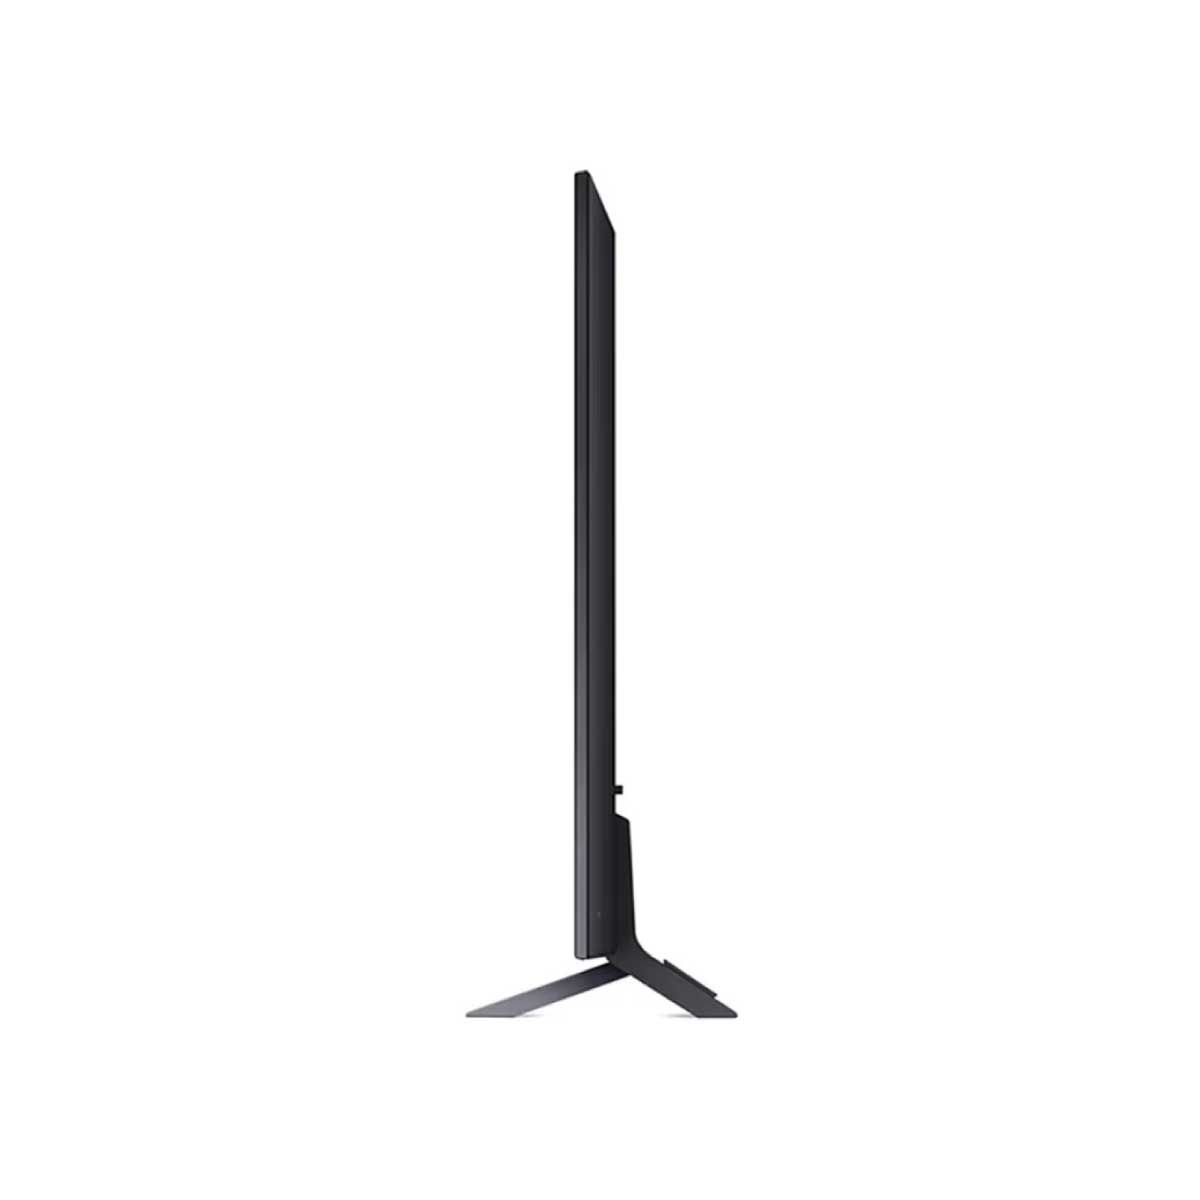 LG QNED TV 4K Smart TV รุ่น 55QNED75SRA  สมาร์ททีวี 55 นิ้ว Quantum Dot NanoCell Magic Remote